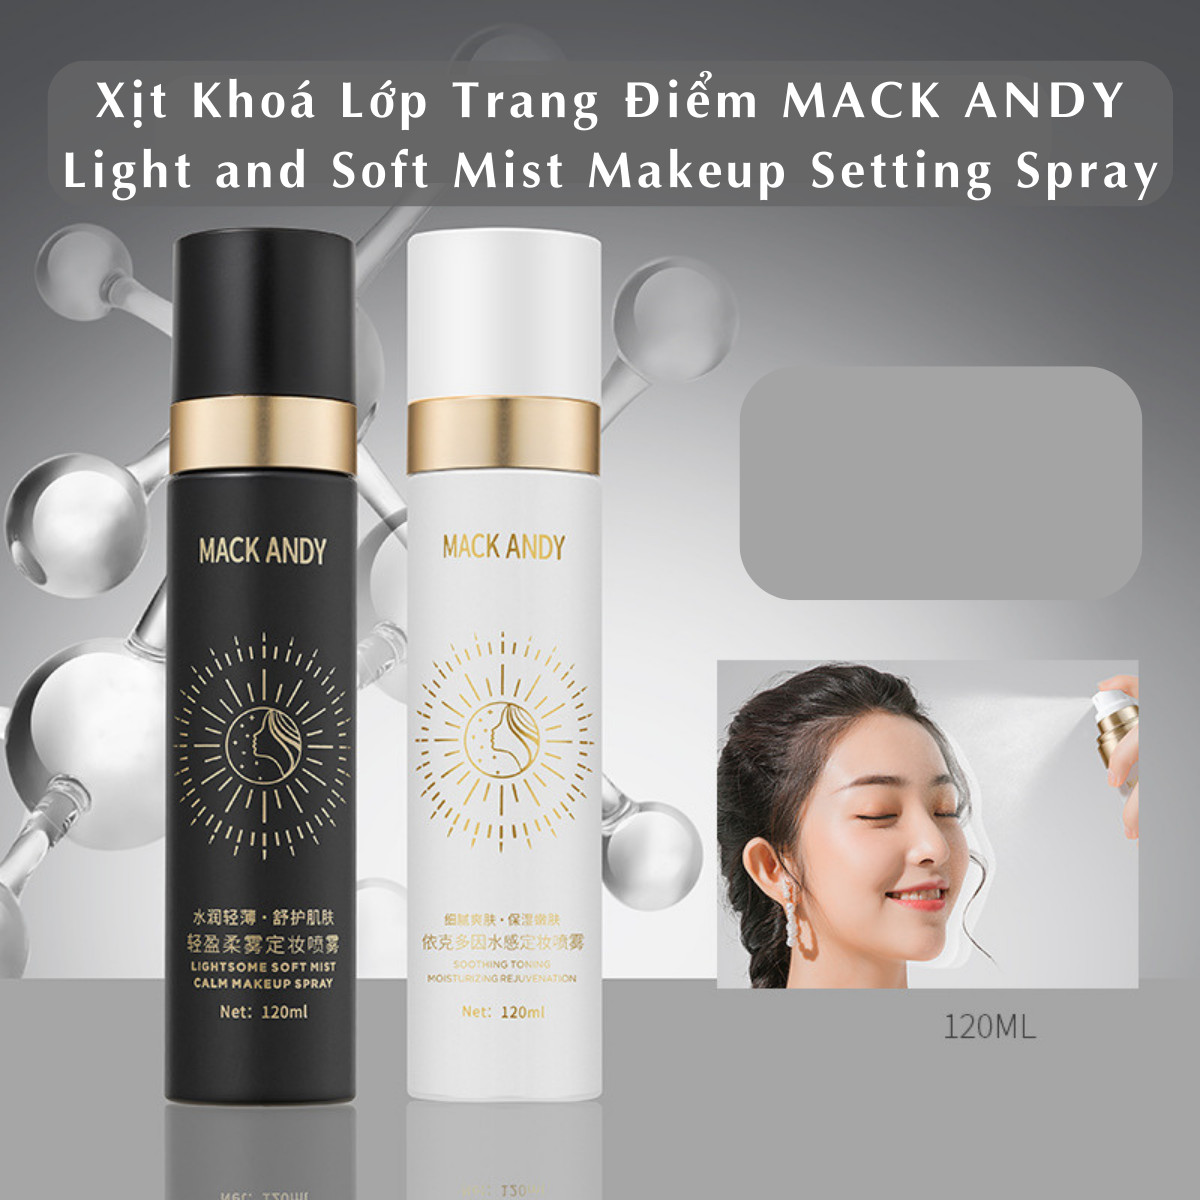 Xịt Khoáng Khóa Lớp Trang Điểm MACK ANDY Light and Soft Mist Makeup Setting Spray 120ml